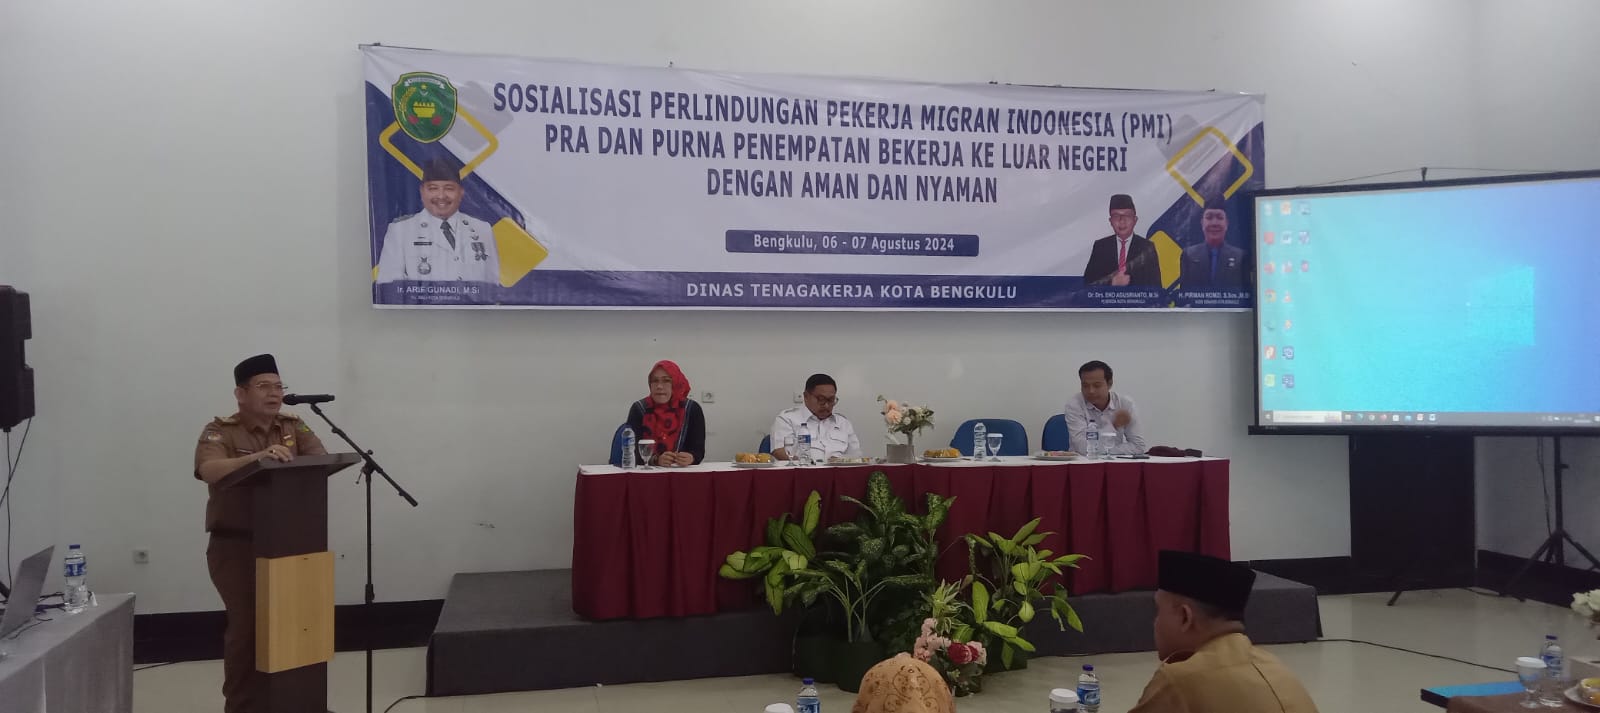 Sosialisasikan Perlindungan Pekerja Migran, Pj Walikota Bengkulu Sebut PMI Pahlawan Devisa